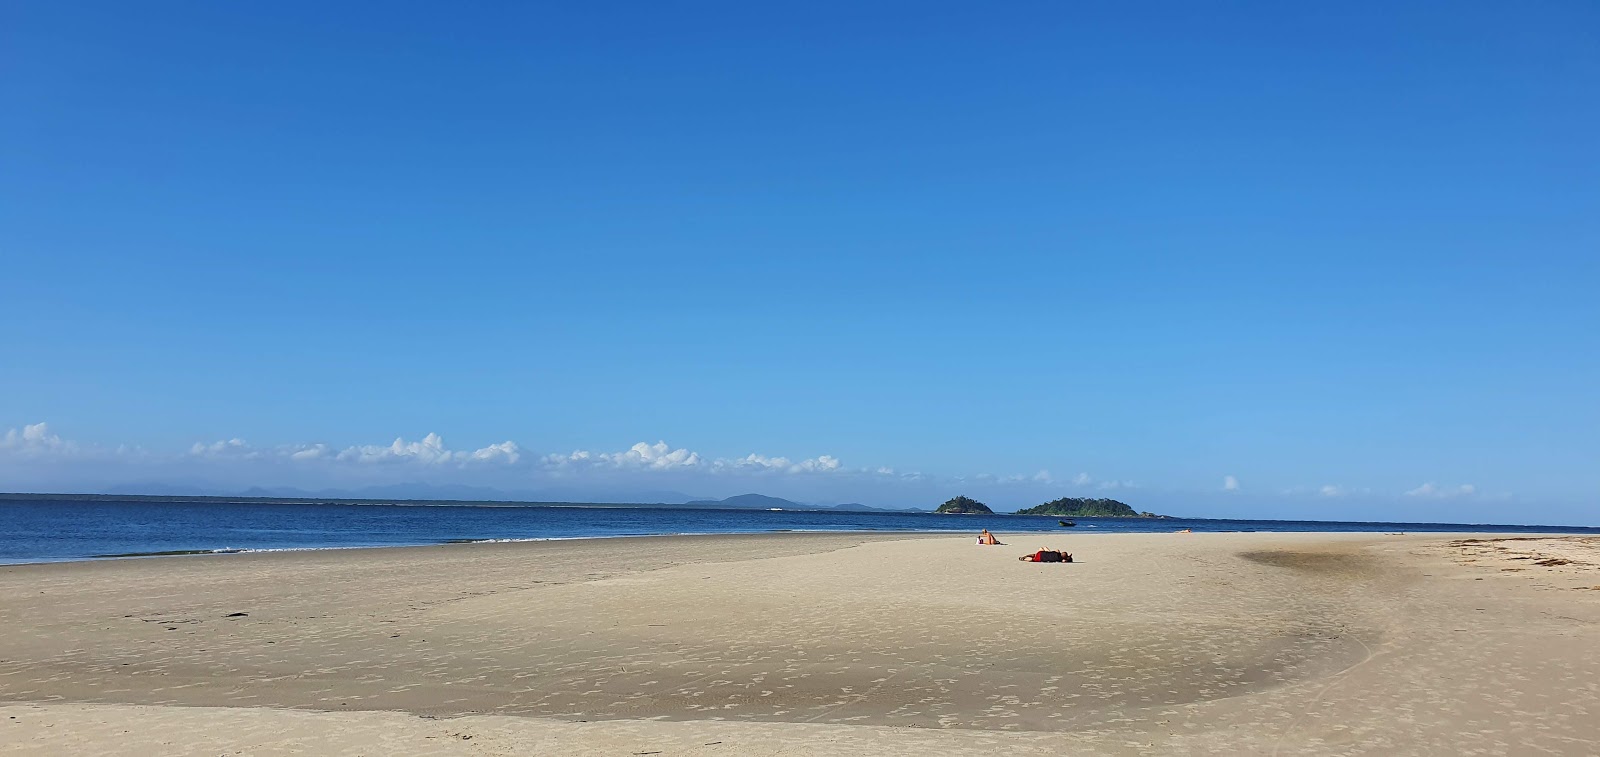 Fotografija Plaža Farol nahaja se v naravnem okolju